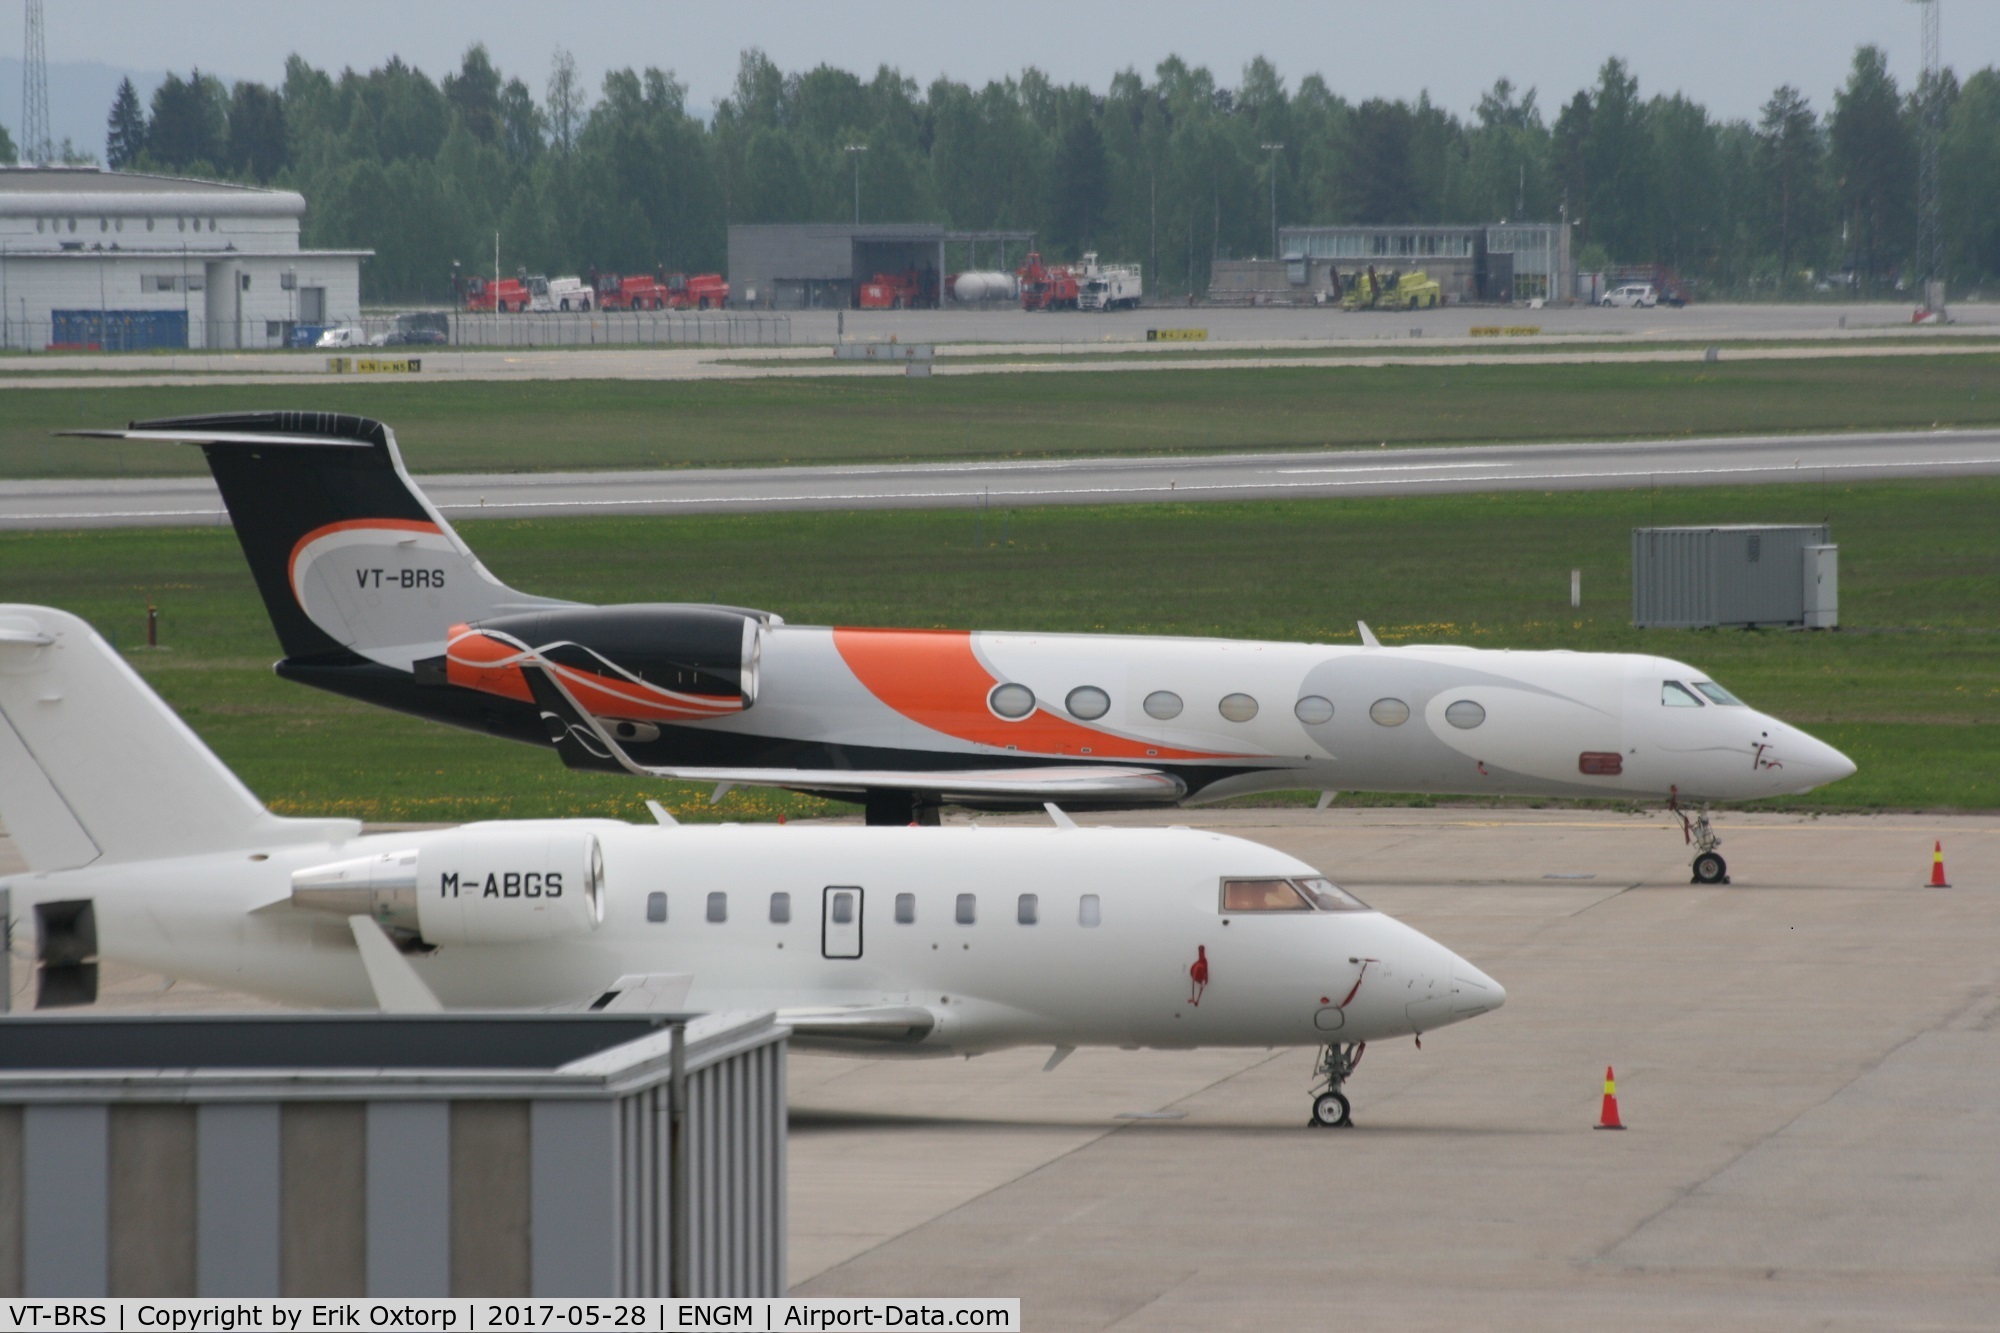 VT-BRS, 2007 Gulfstream Aerospace GV-SP (G550) C/N 5162, VT-BRS in OSL